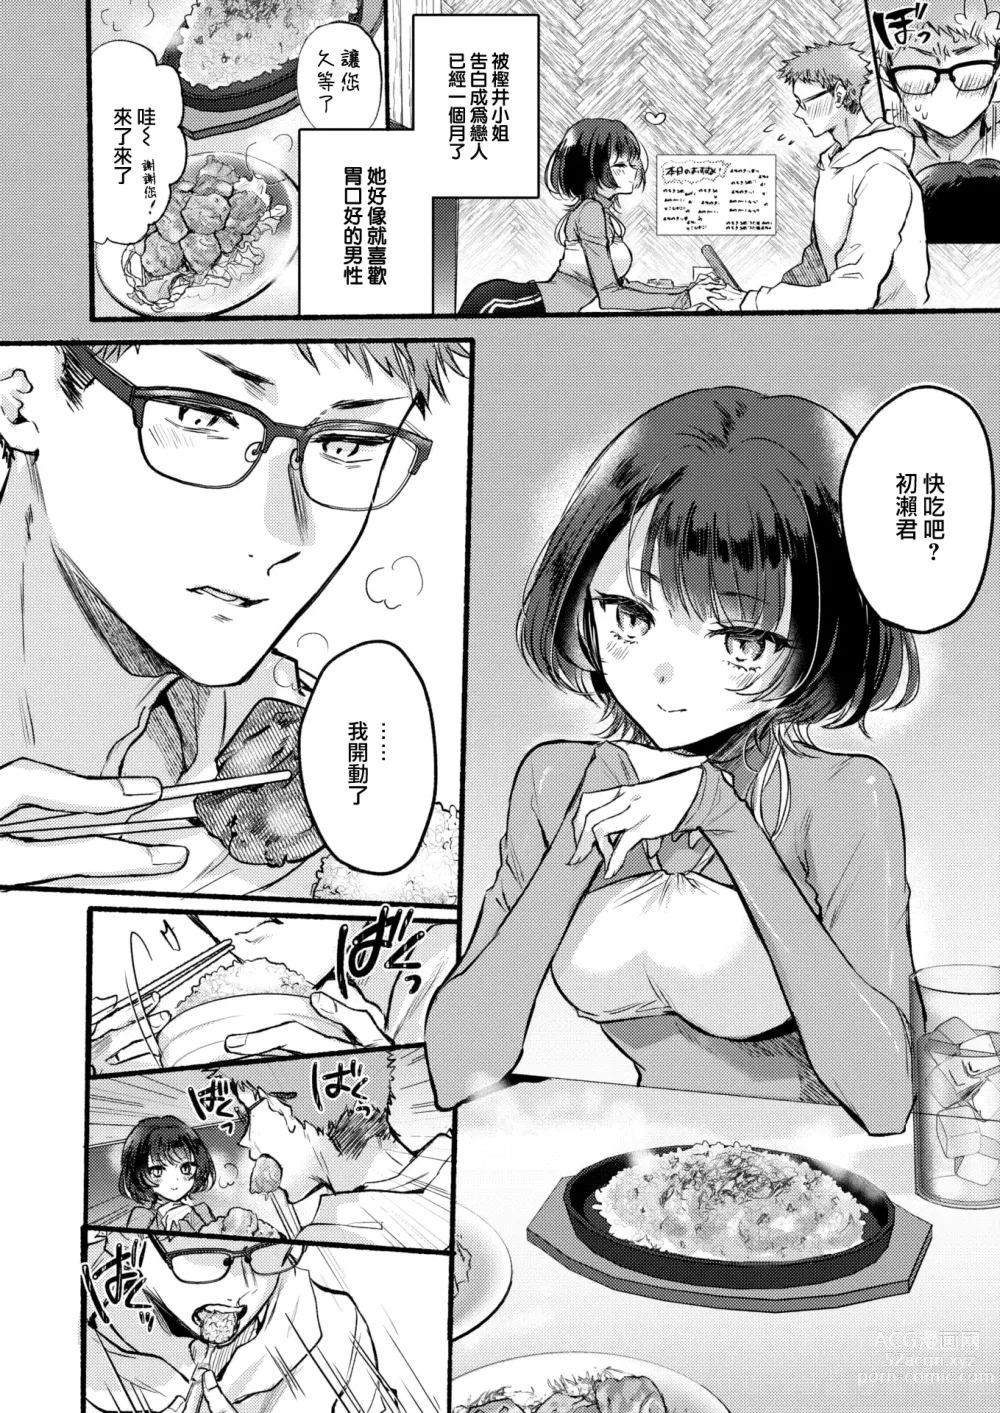 Page 7 of manga ] Kashiisan wa Tabesasetai!